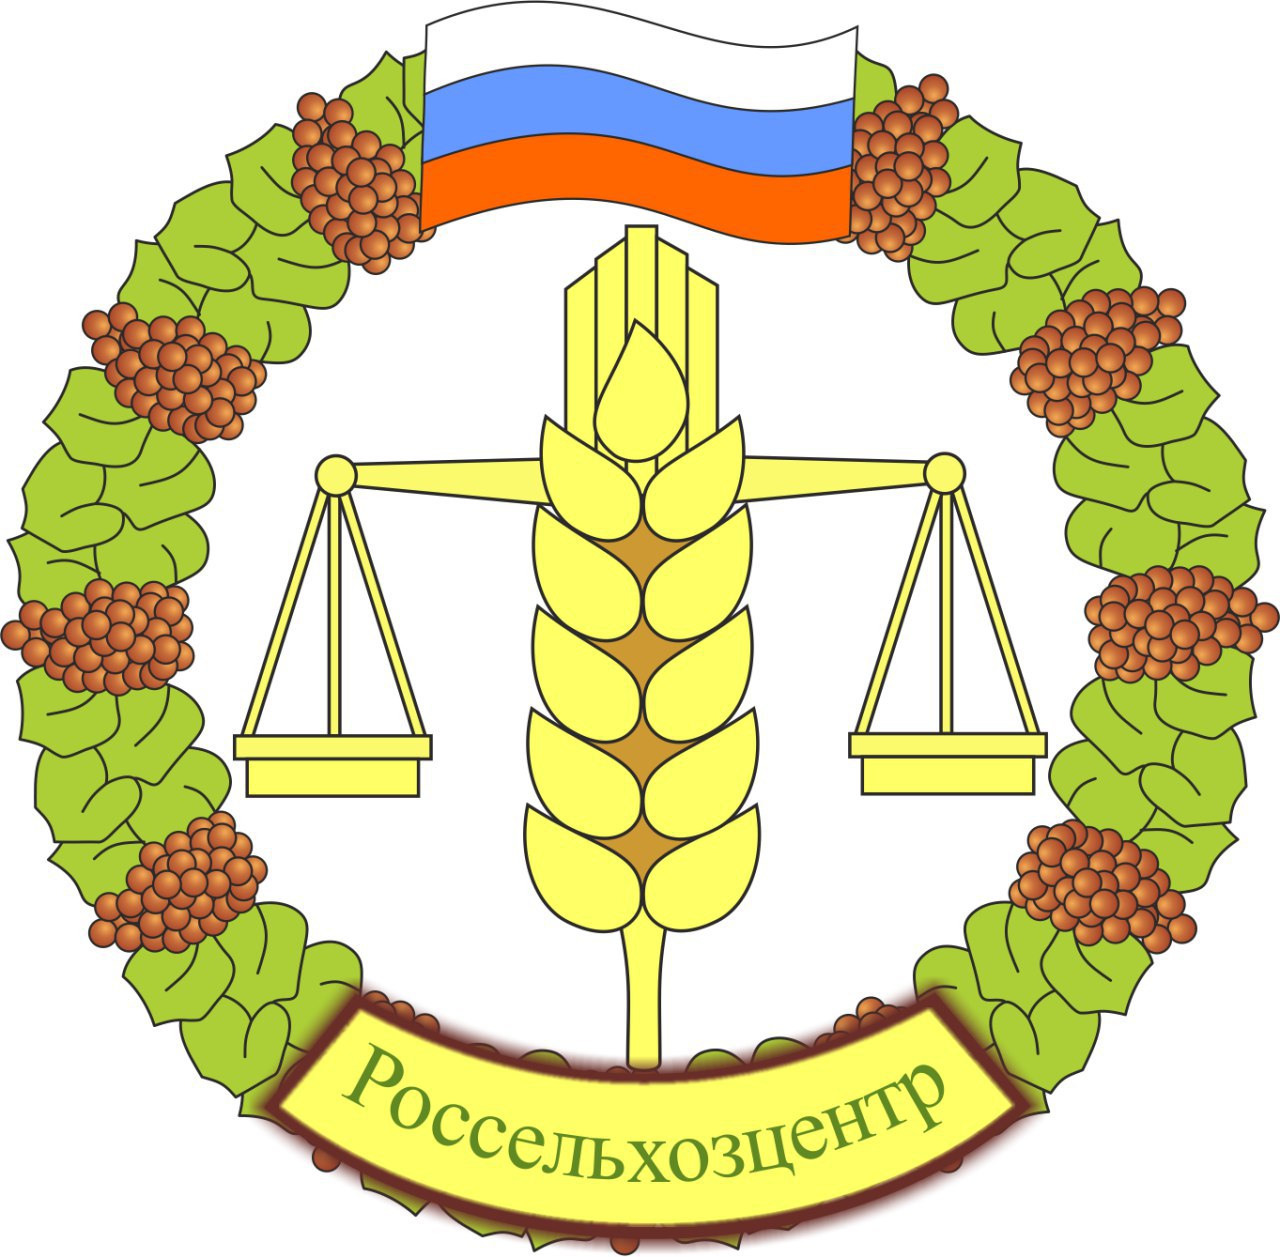 Обеспеченность российских аграриев кондиционными семенами под озимый сев выше прошлогодней